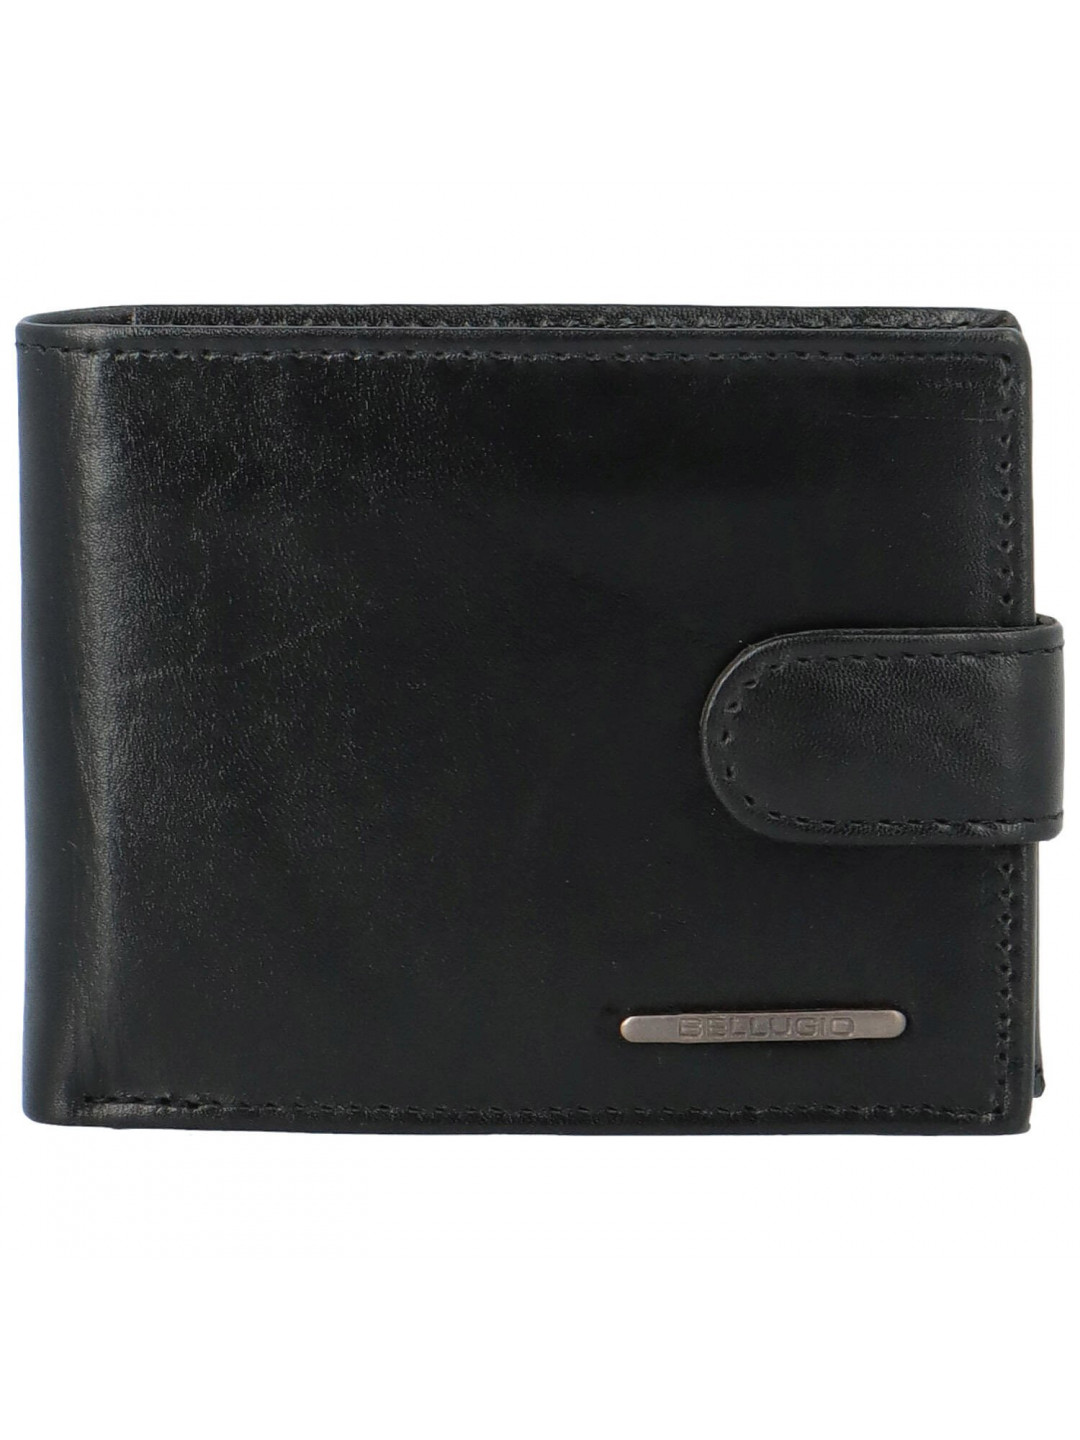 Pánská kožená peněženka černá – Bellugio Evront